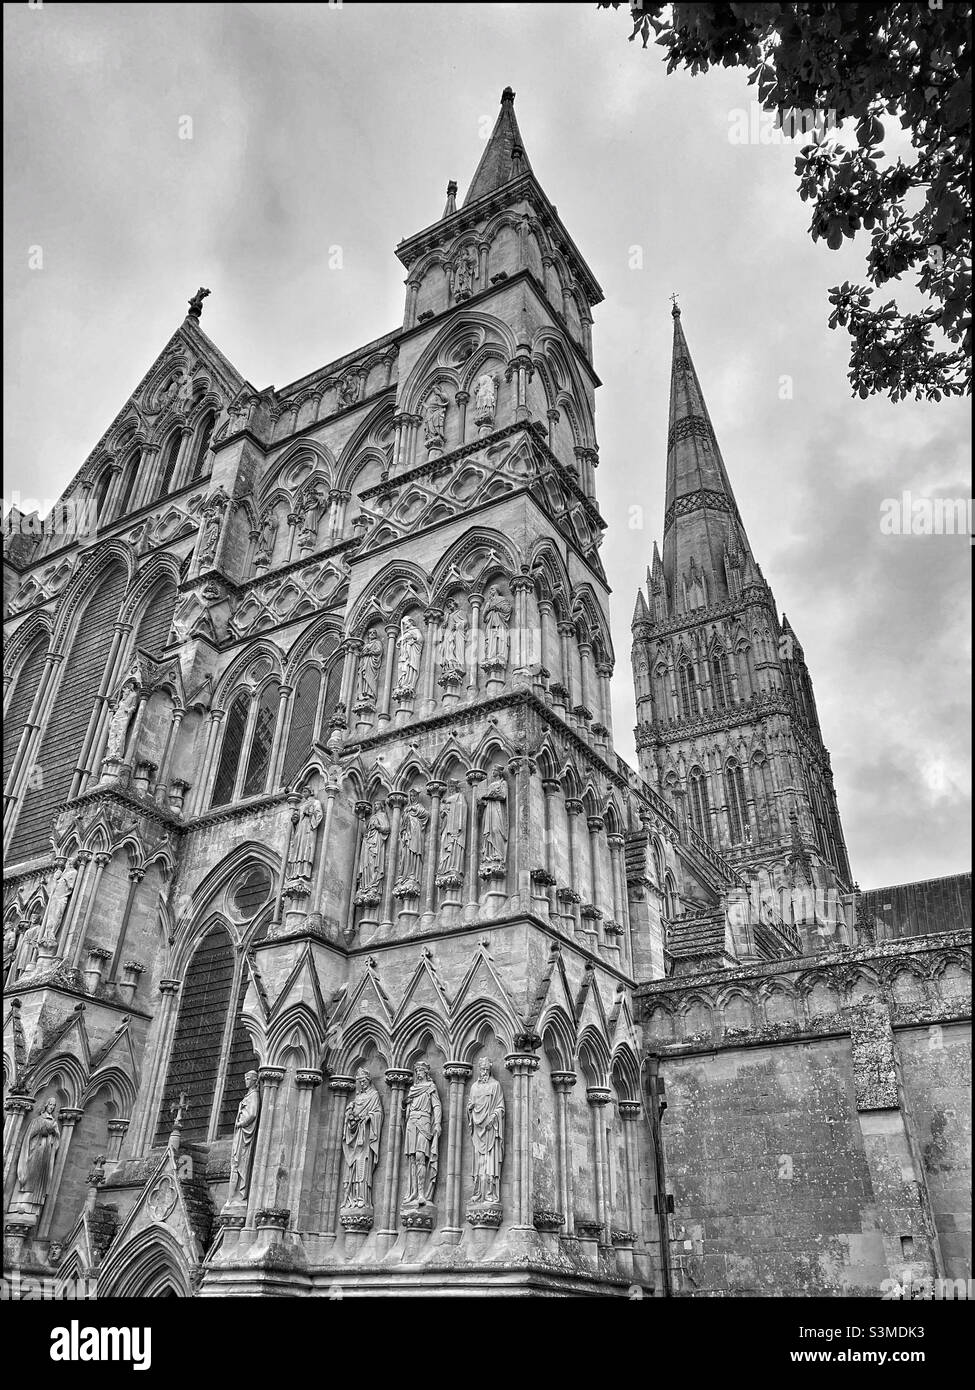 Una vista della facciata occidentale e della guglia della cattedrale di Salisbury nel Wiltshire, Inghilterra. Questa Cattedrale ospita una copia originale della Magna carta. La guglia è la più alta del Regno Unito. Foto ©️ COLIN HOSKINS. Foto Stock